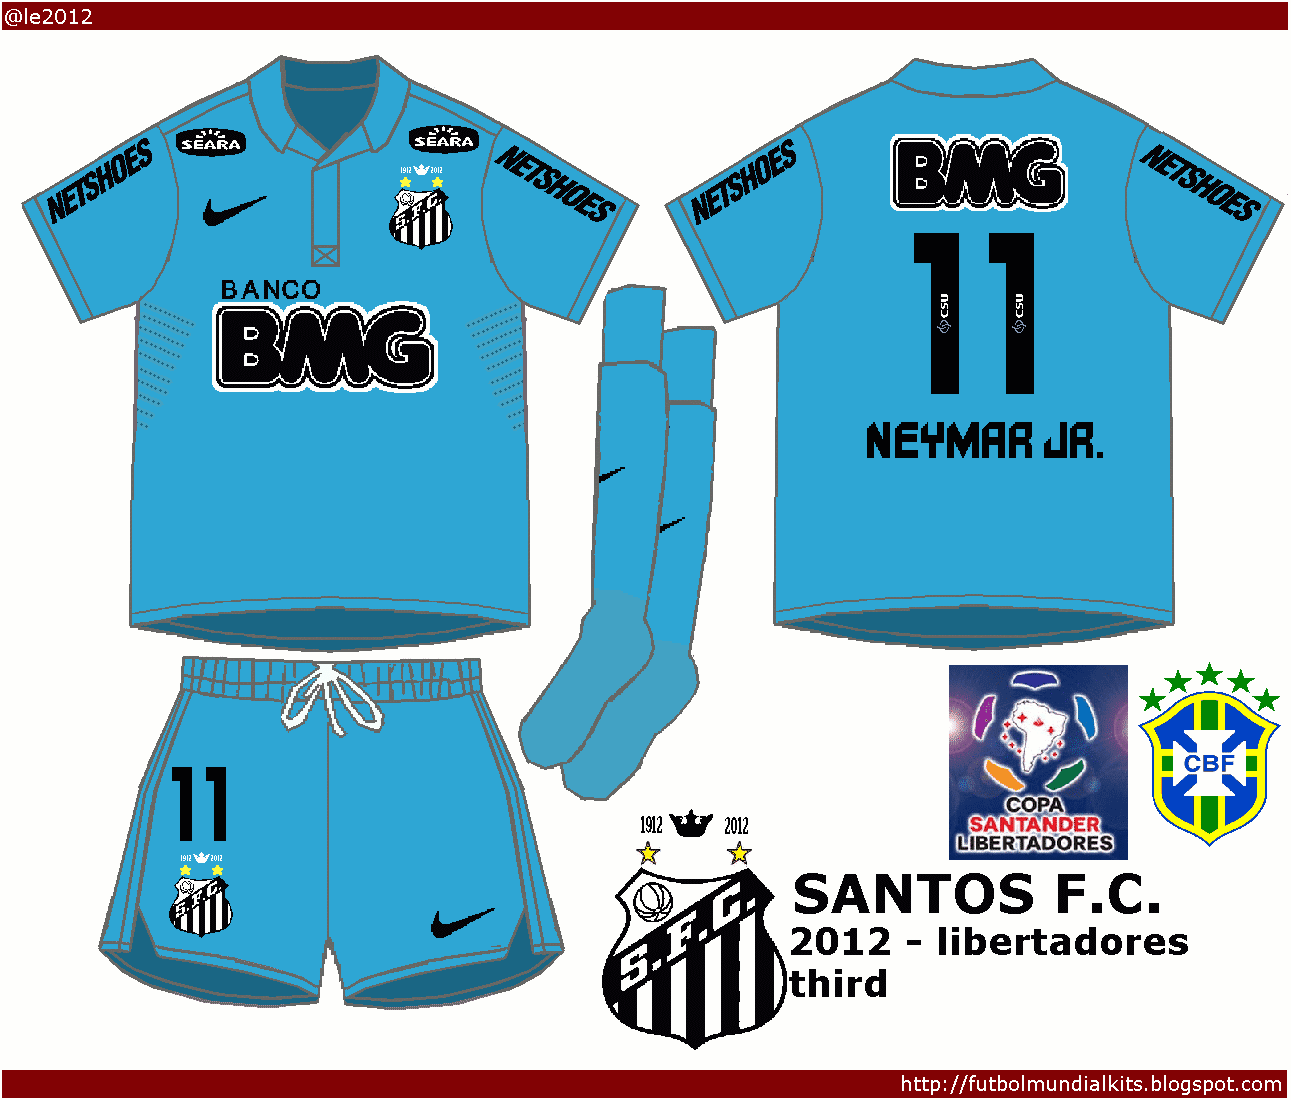 Fútbol Mundial Kits - Uruguay: Santos F. C. 2012 - (